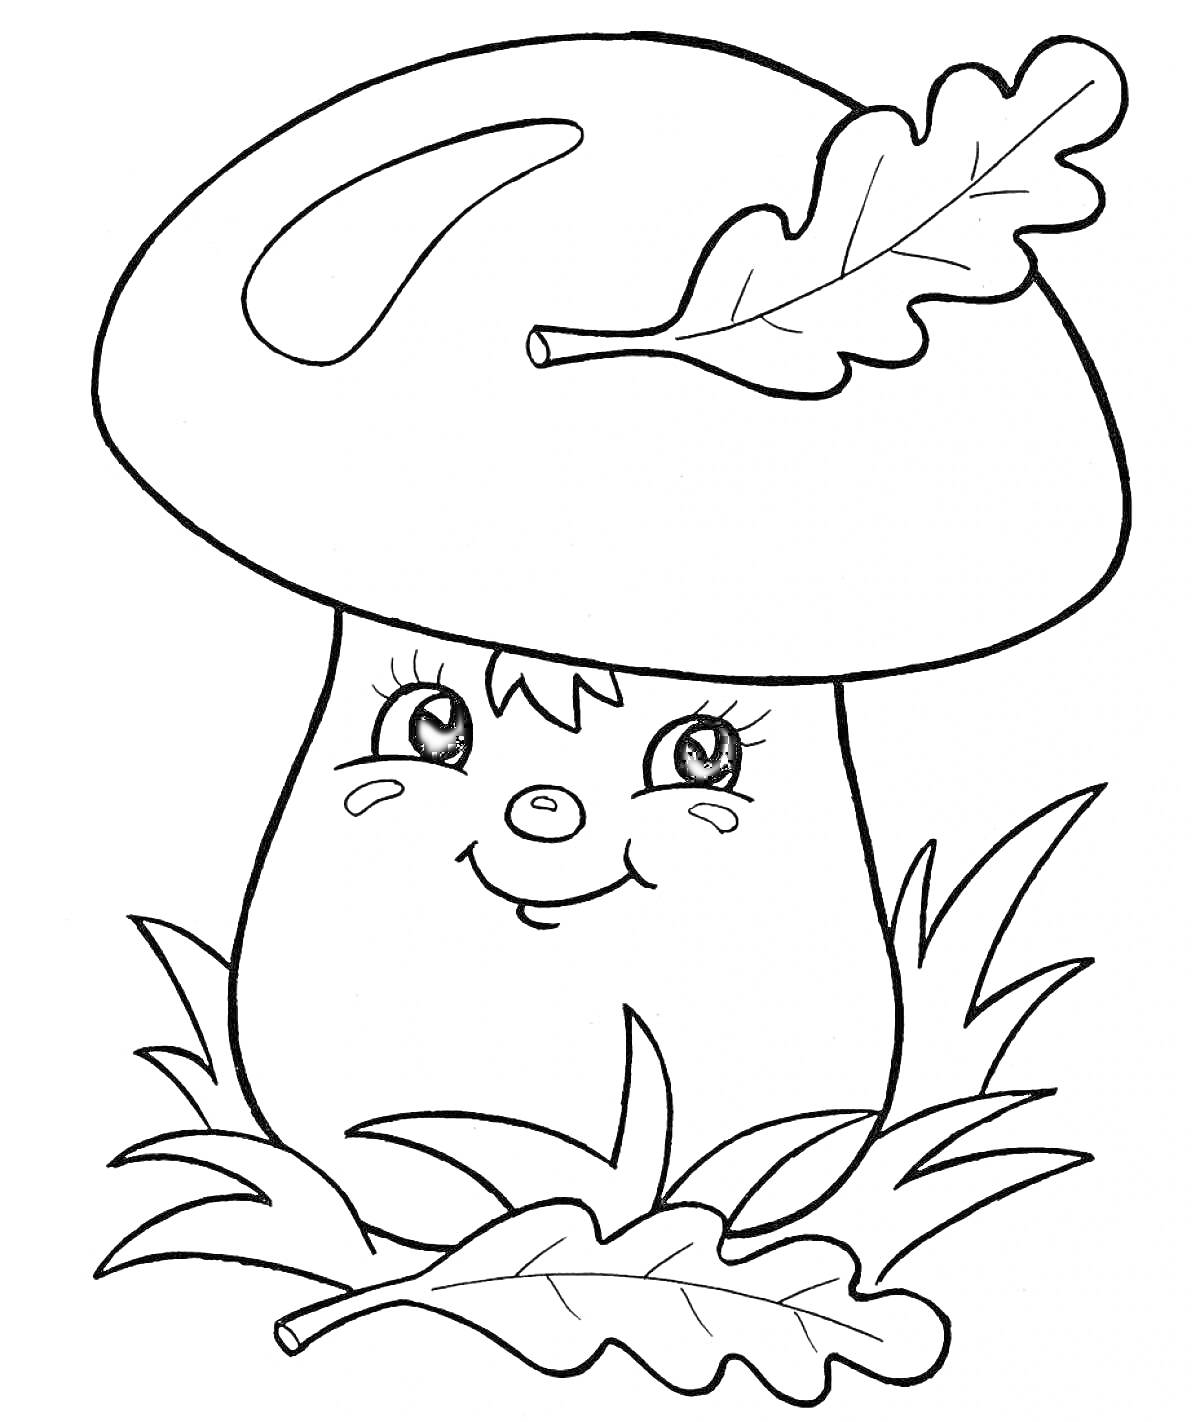 Раскраска Улыбающийся гриб с листиком на шляпке и травой вокруг